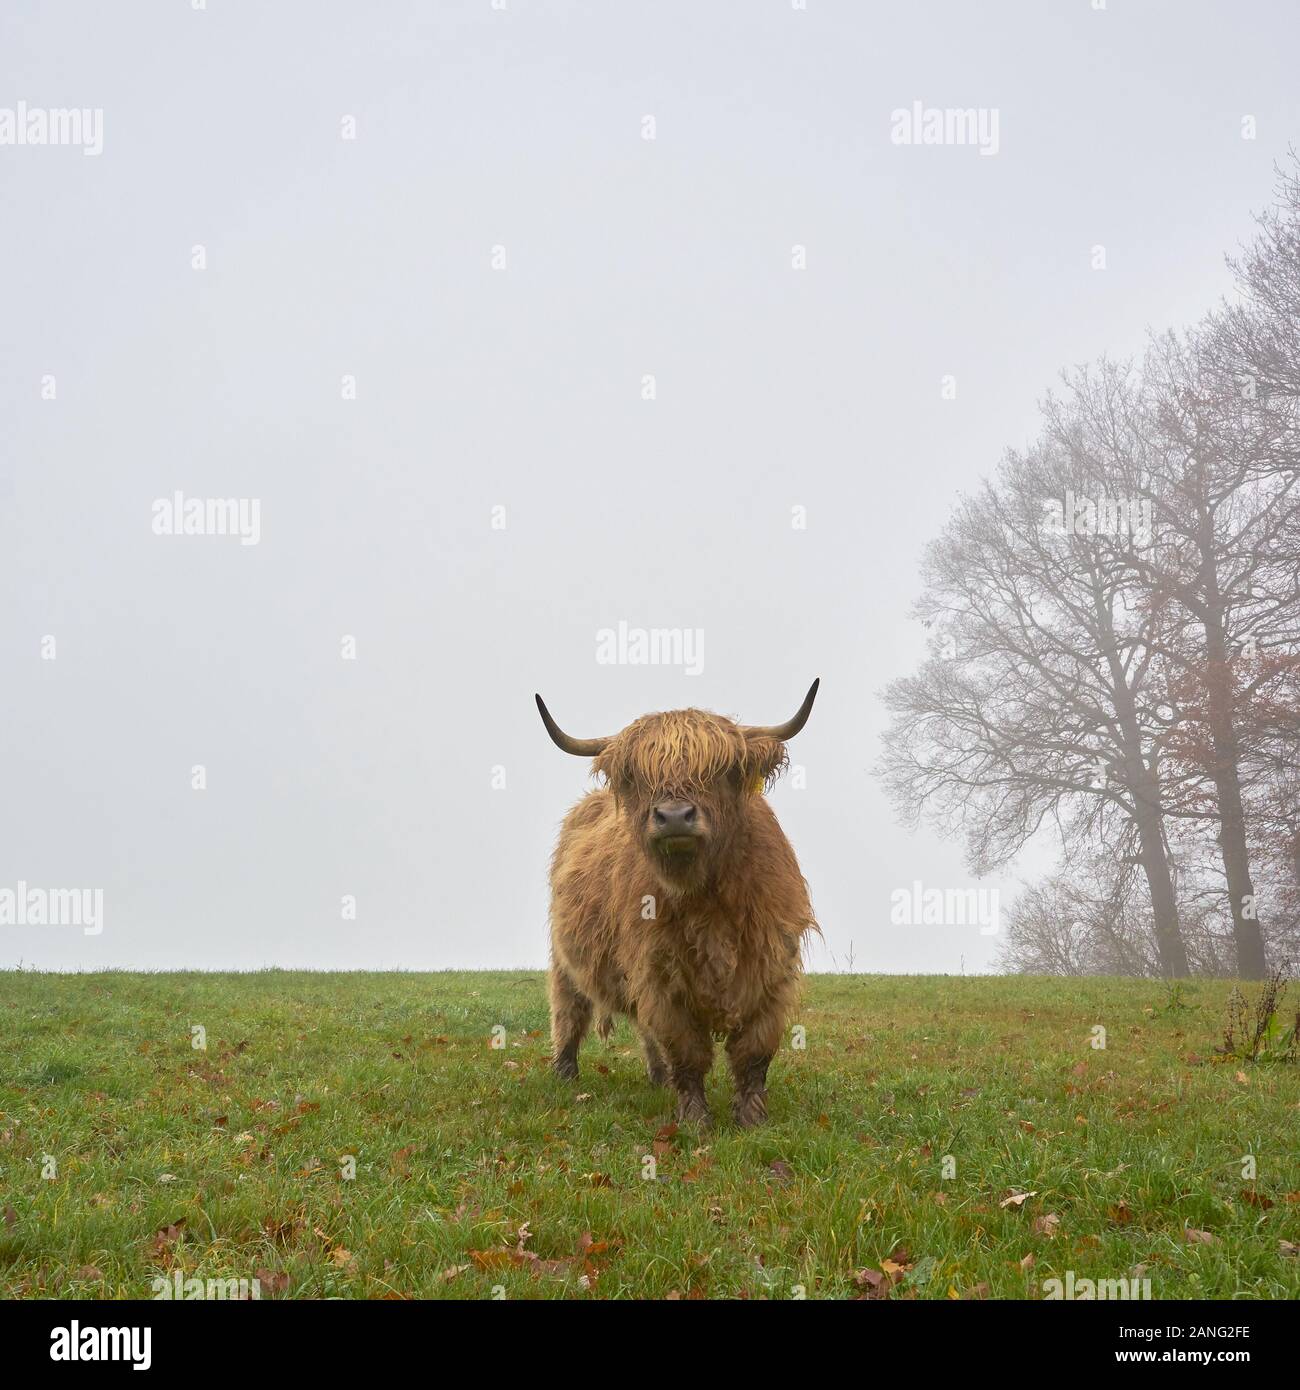 Un ganado escocés de tierras altas se encuentra en una tierra de cultivo. El clima es frío y niebla. Foto de stock